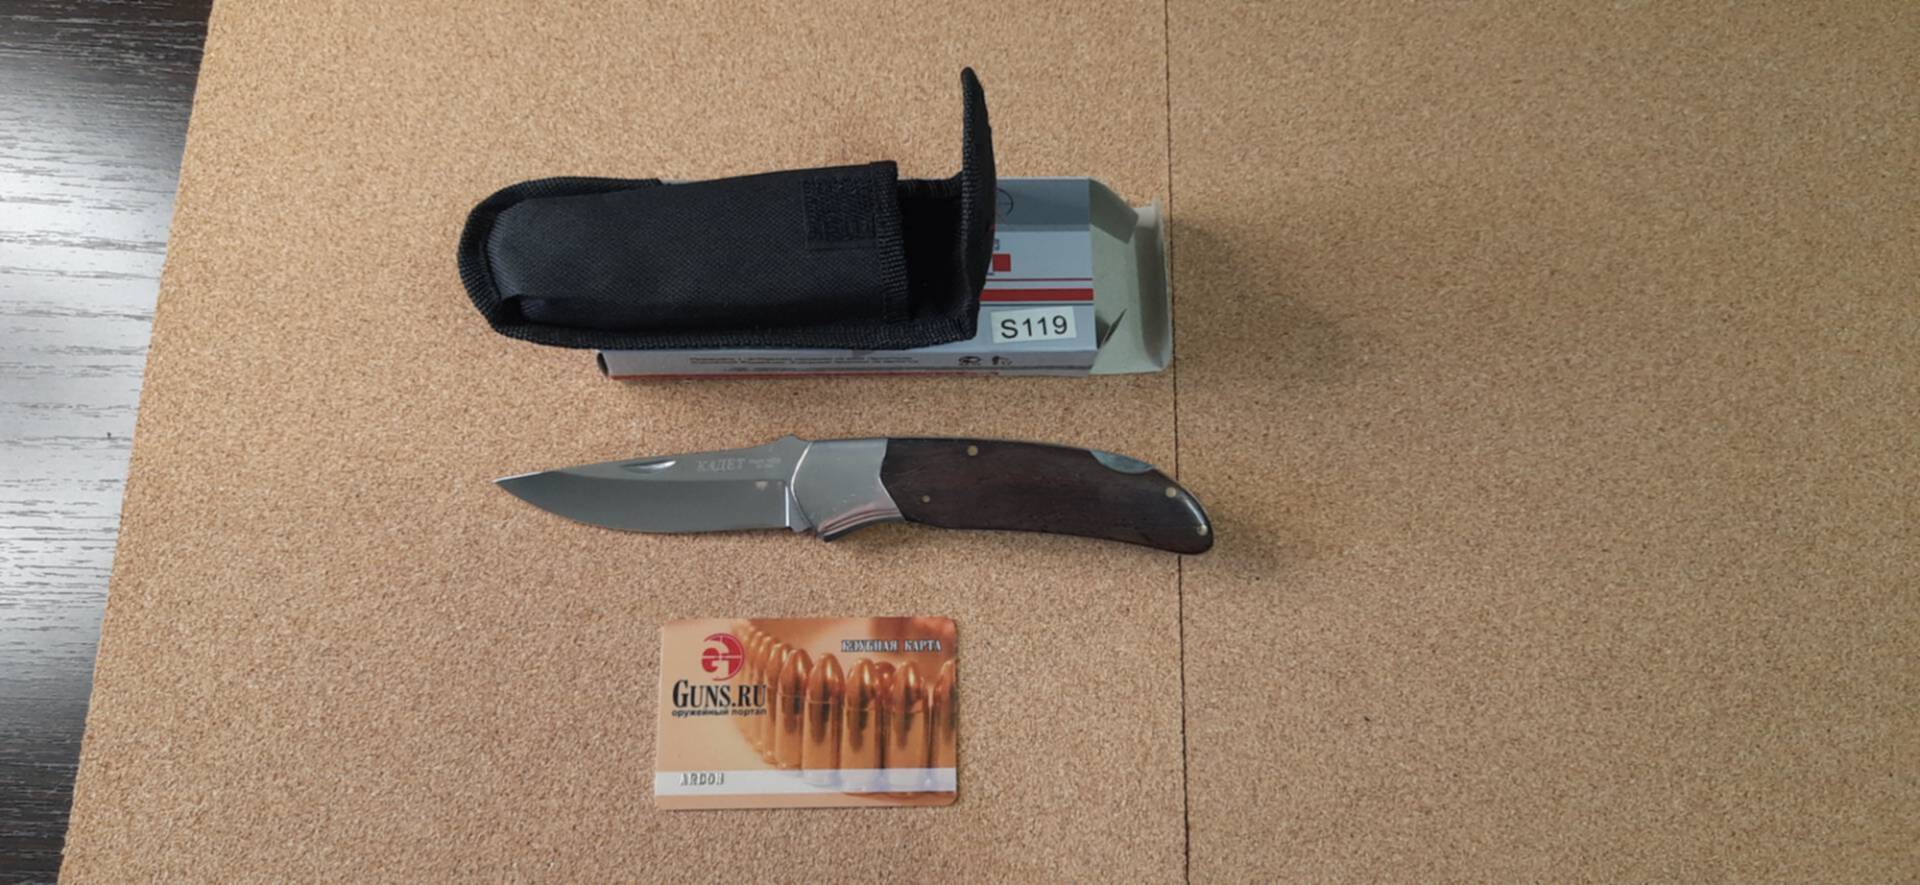 20 ножевых. Luxe sale нож.